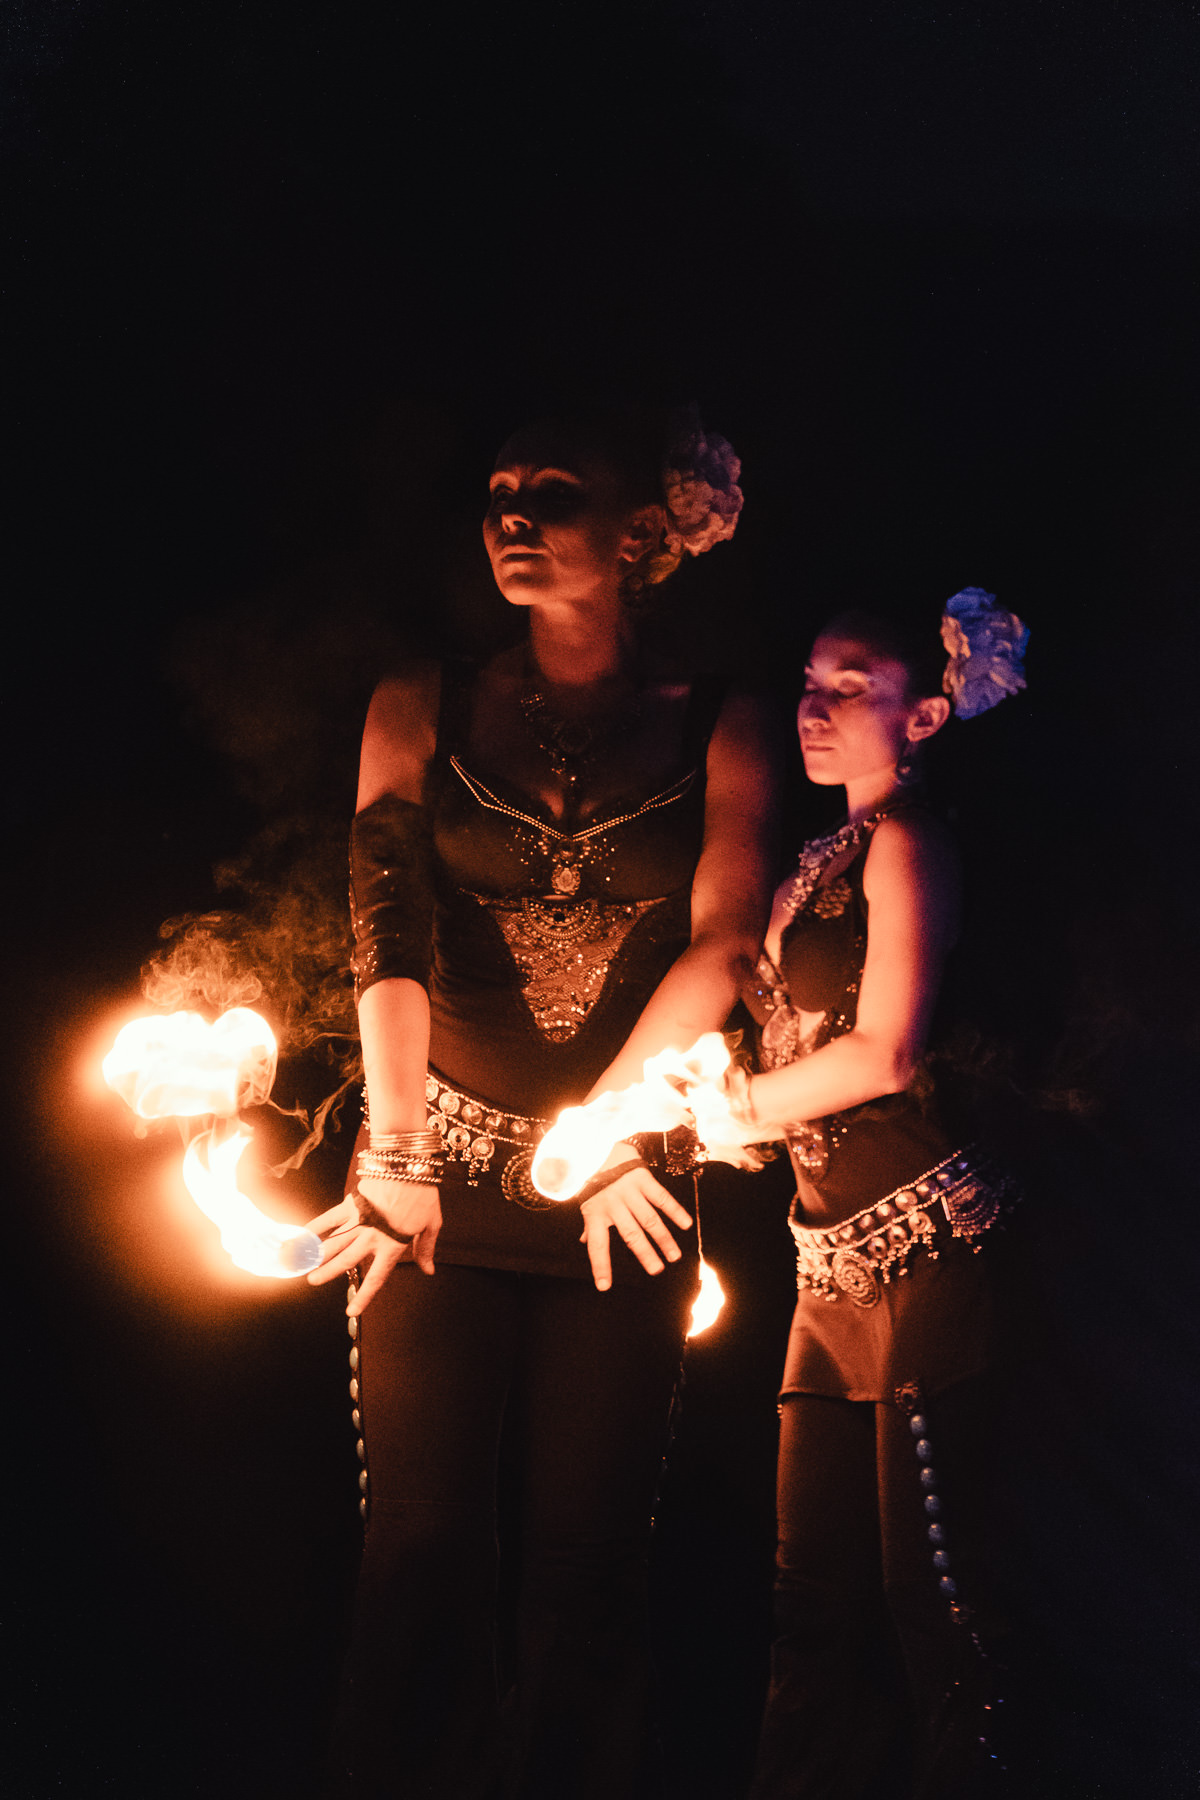 Compagnie Manda Lights, spectacle de feu et de pyrotechnie, photographiée à La Ravoire en 2018 à l'occasion de la fête de La Saint Jean